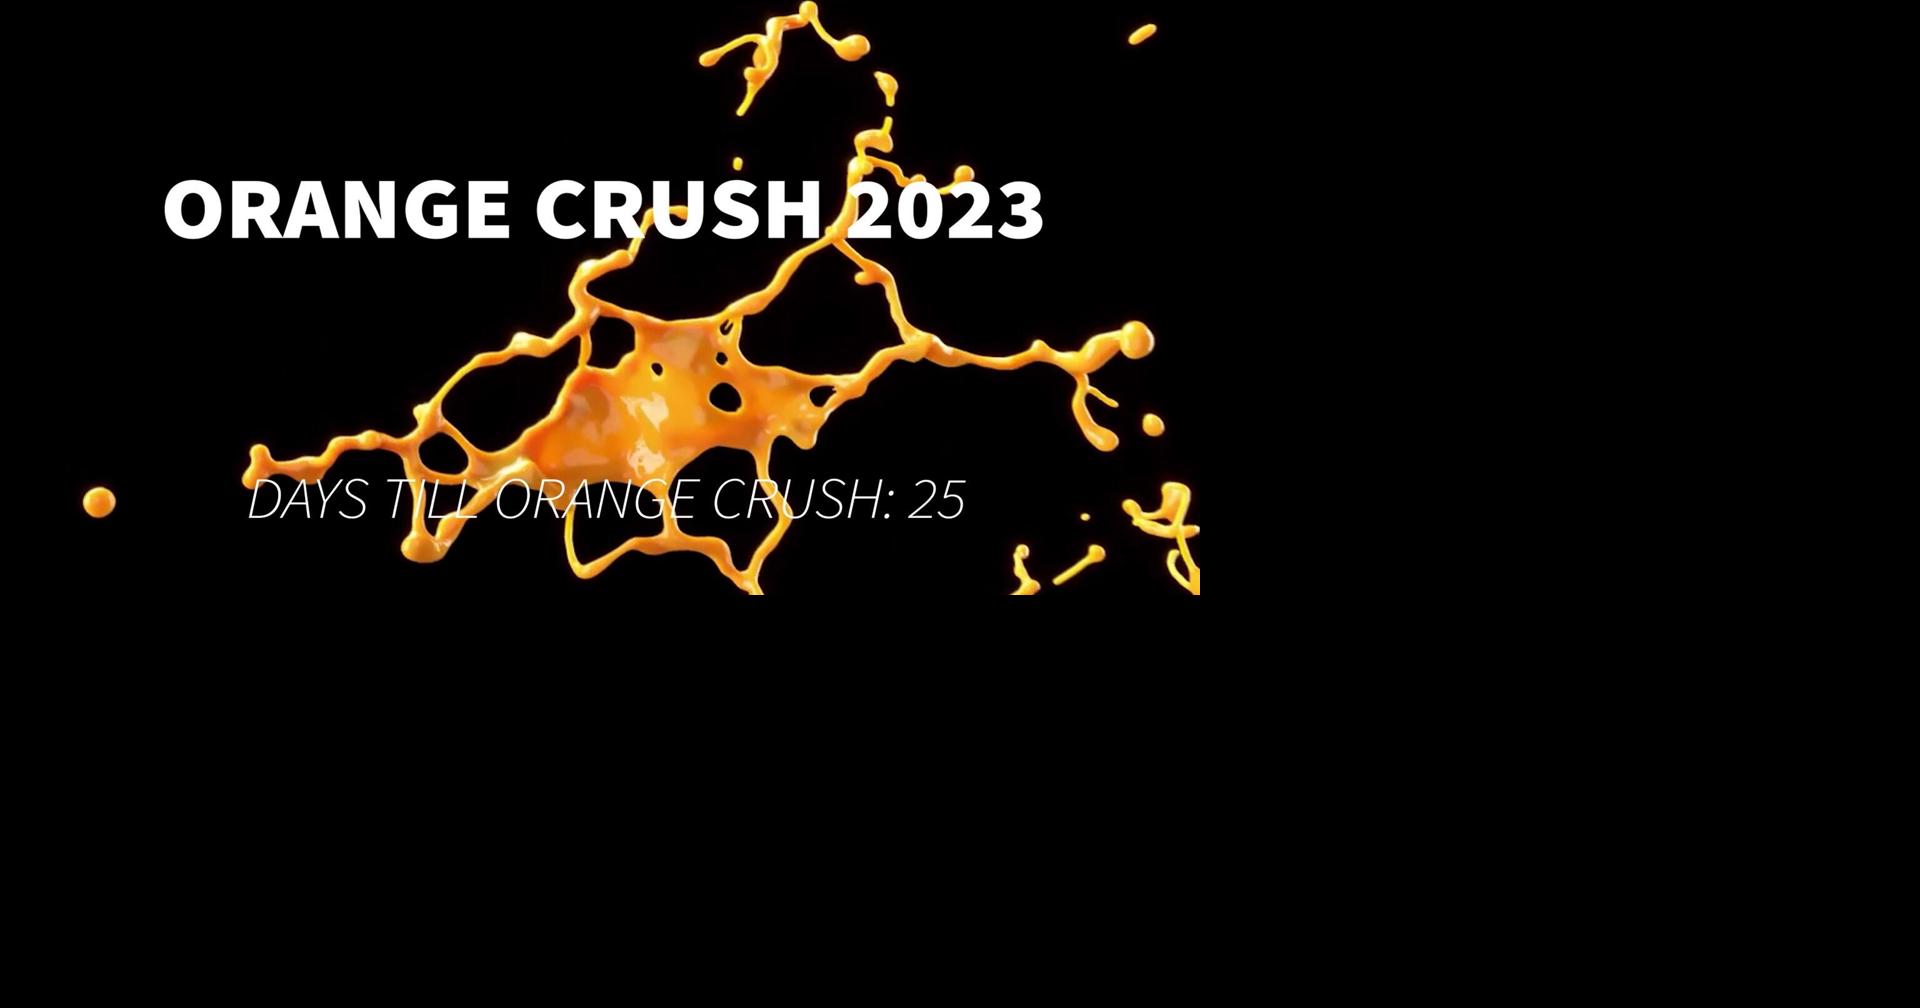 Orange Crush Festival returns to Jacksonville in June 2023